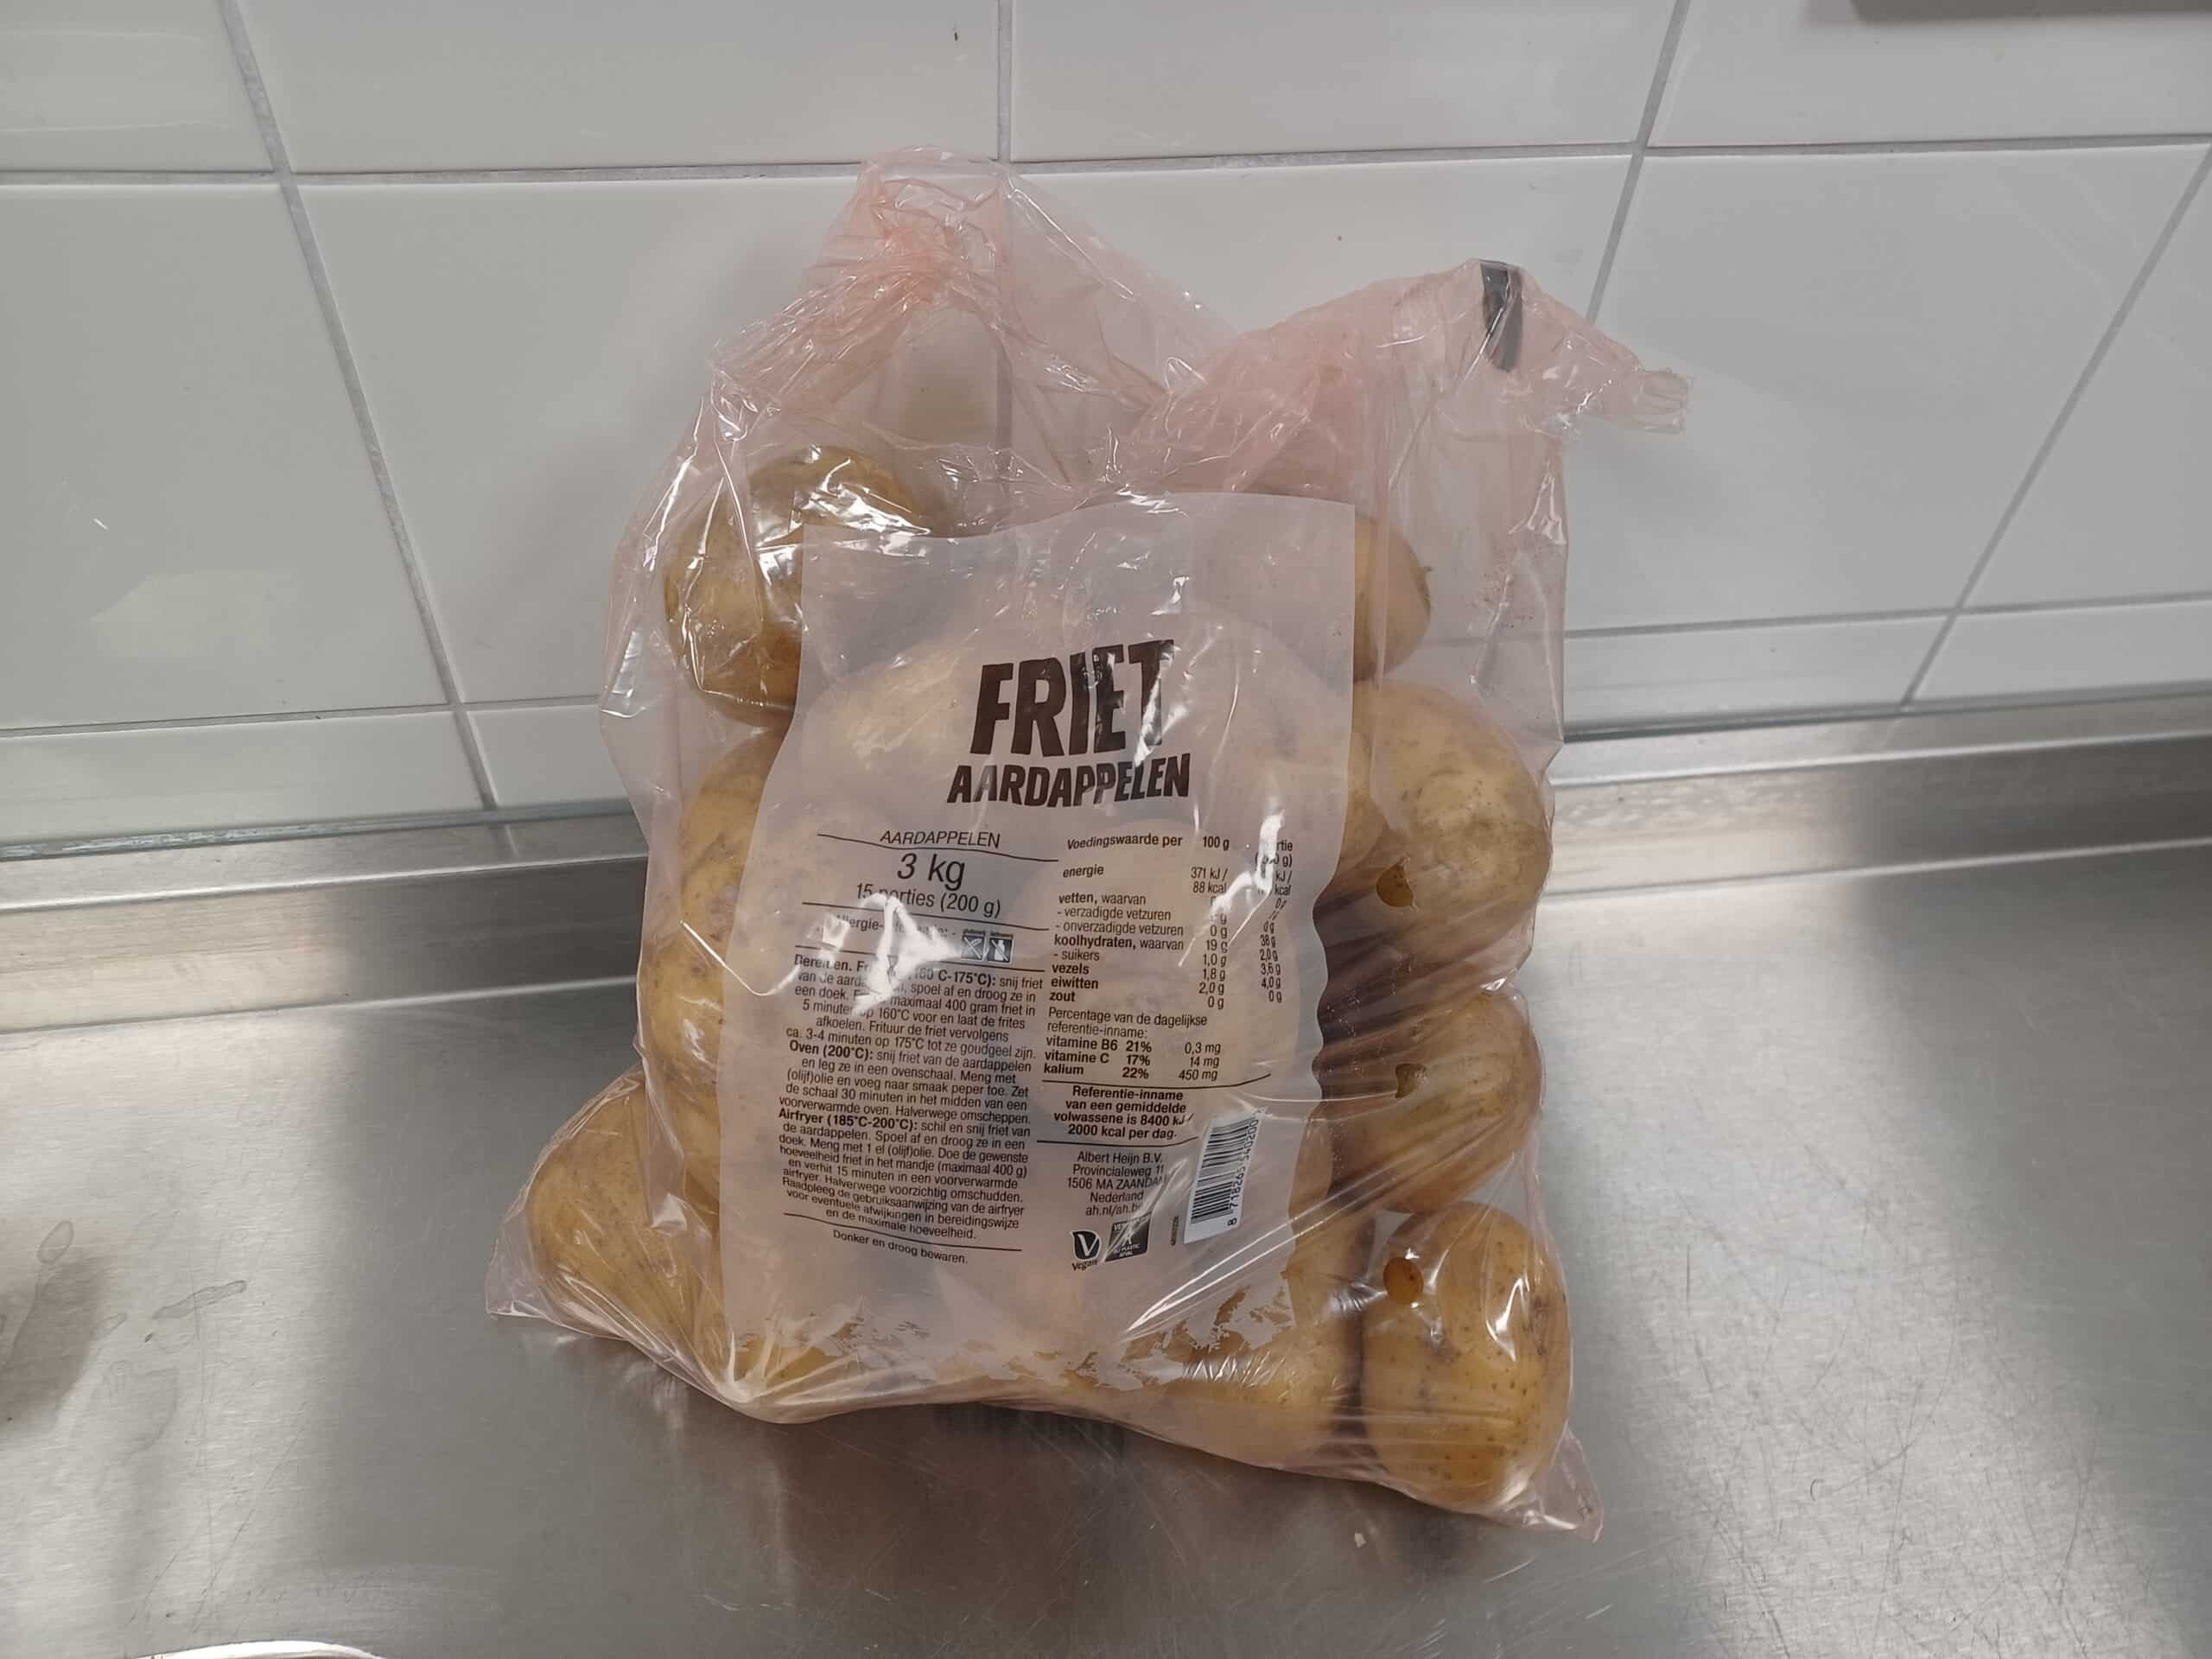 Iets kruimige aardappelen